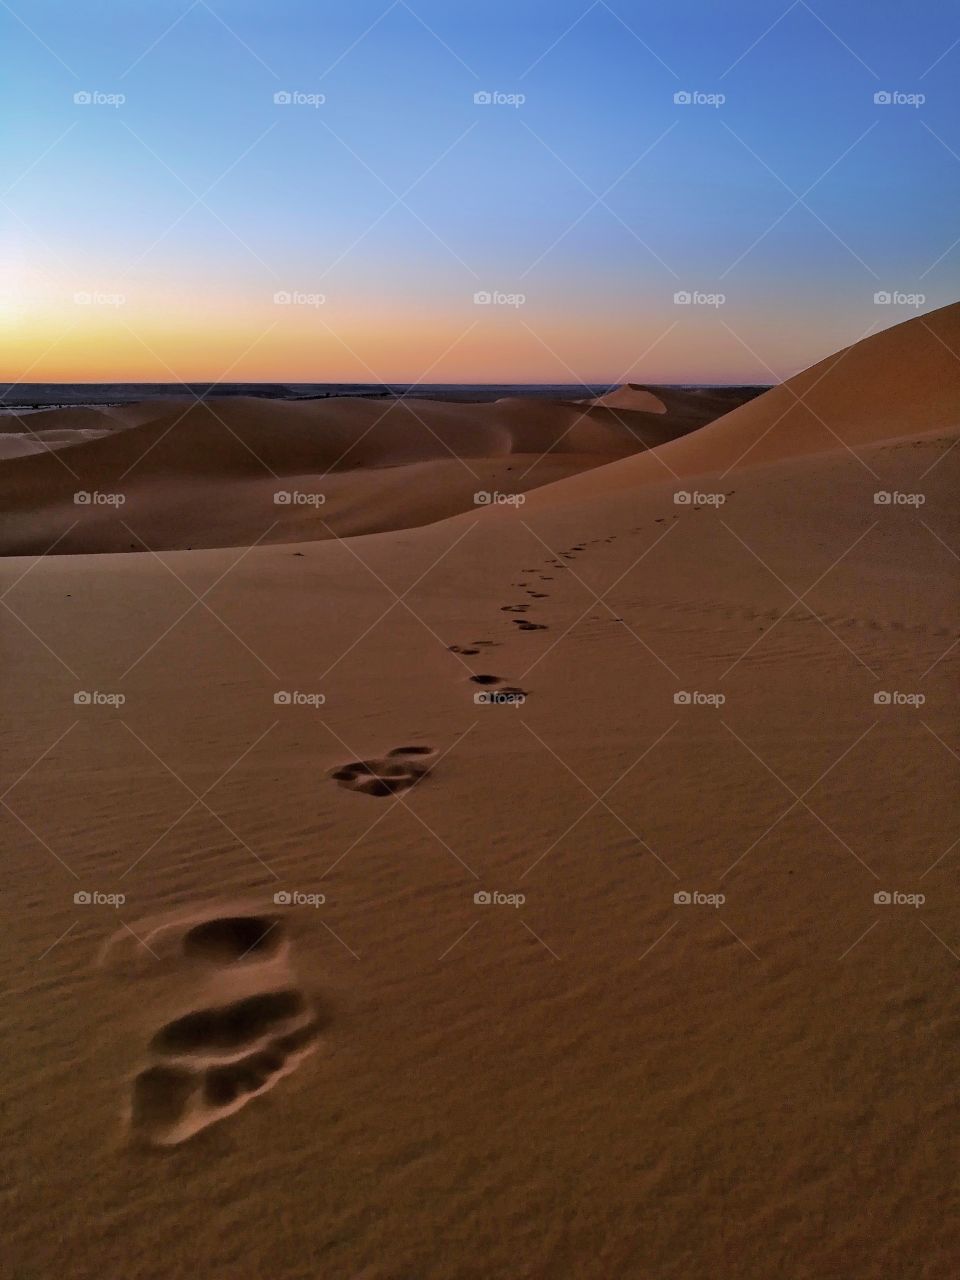 Desert of Algeria Golden Sands 2